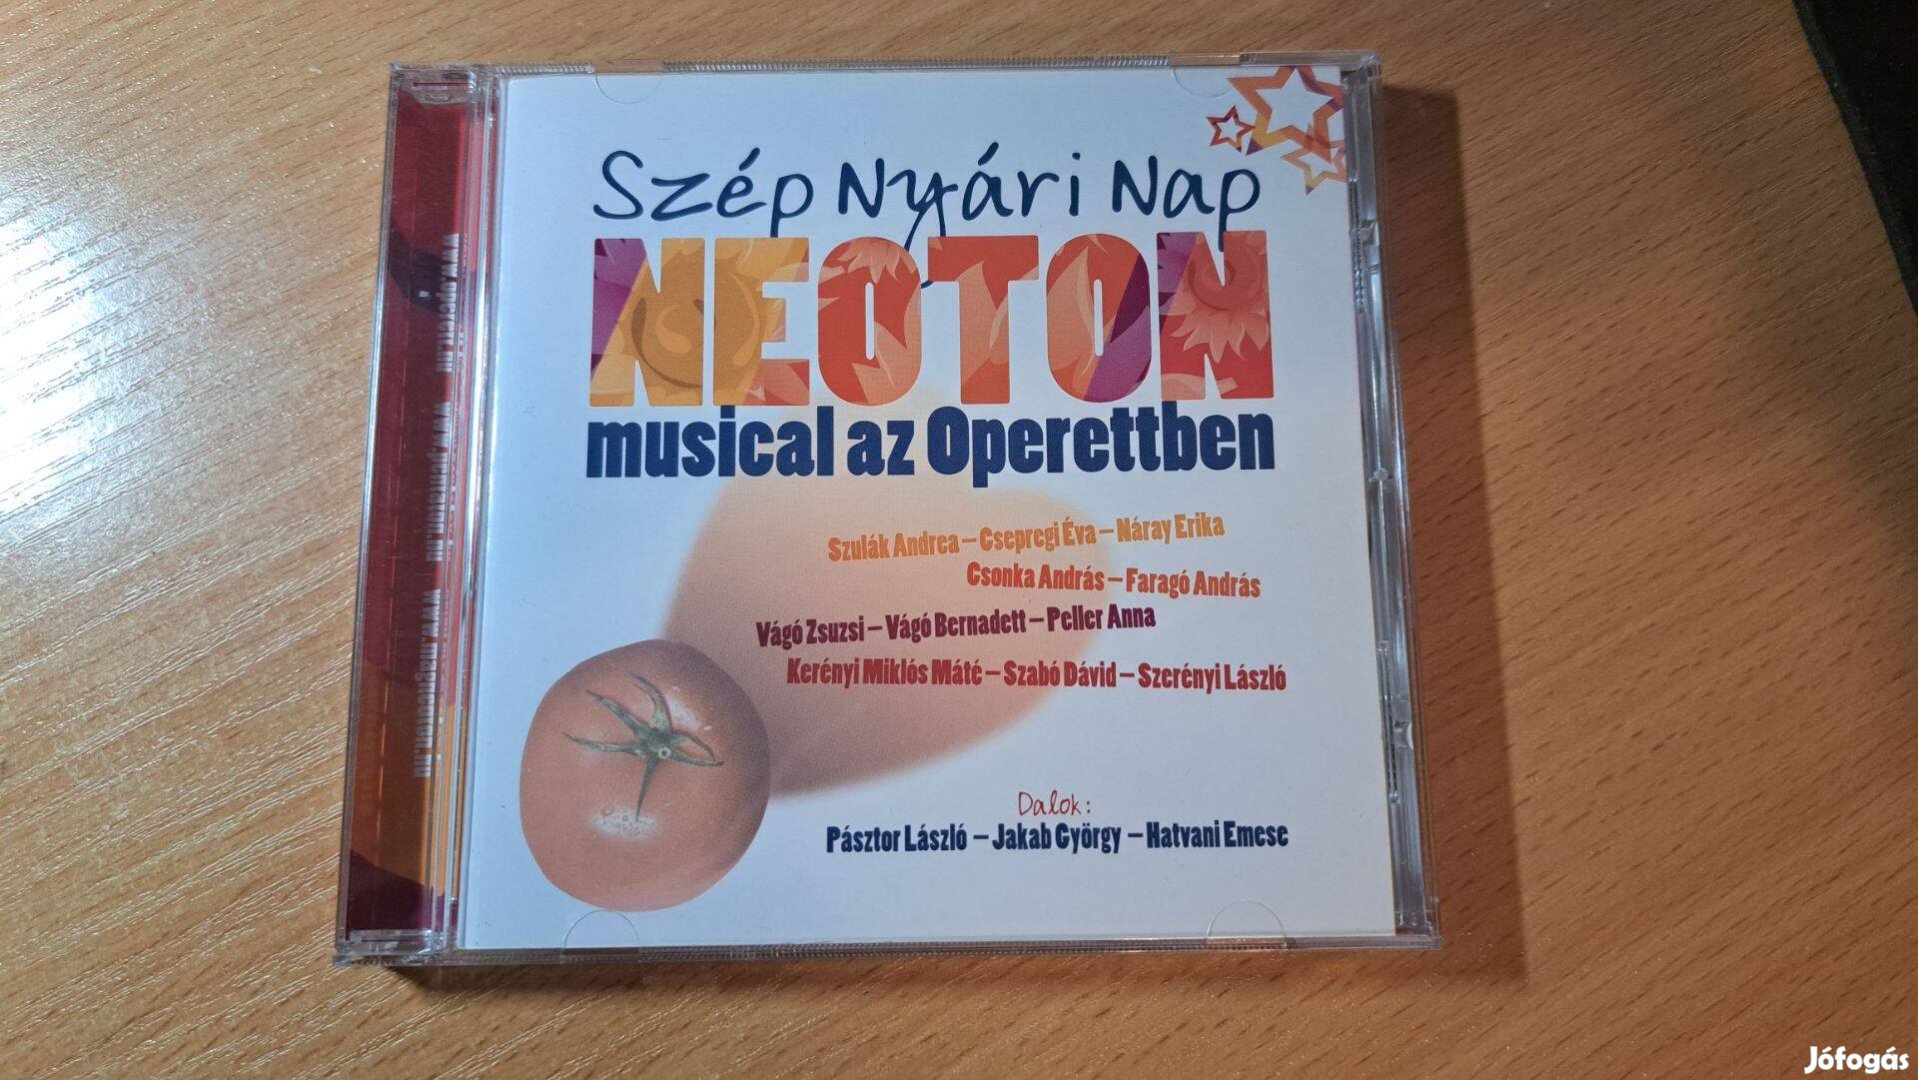 Szép nyári nap - Neoton musical az Operettben - CD